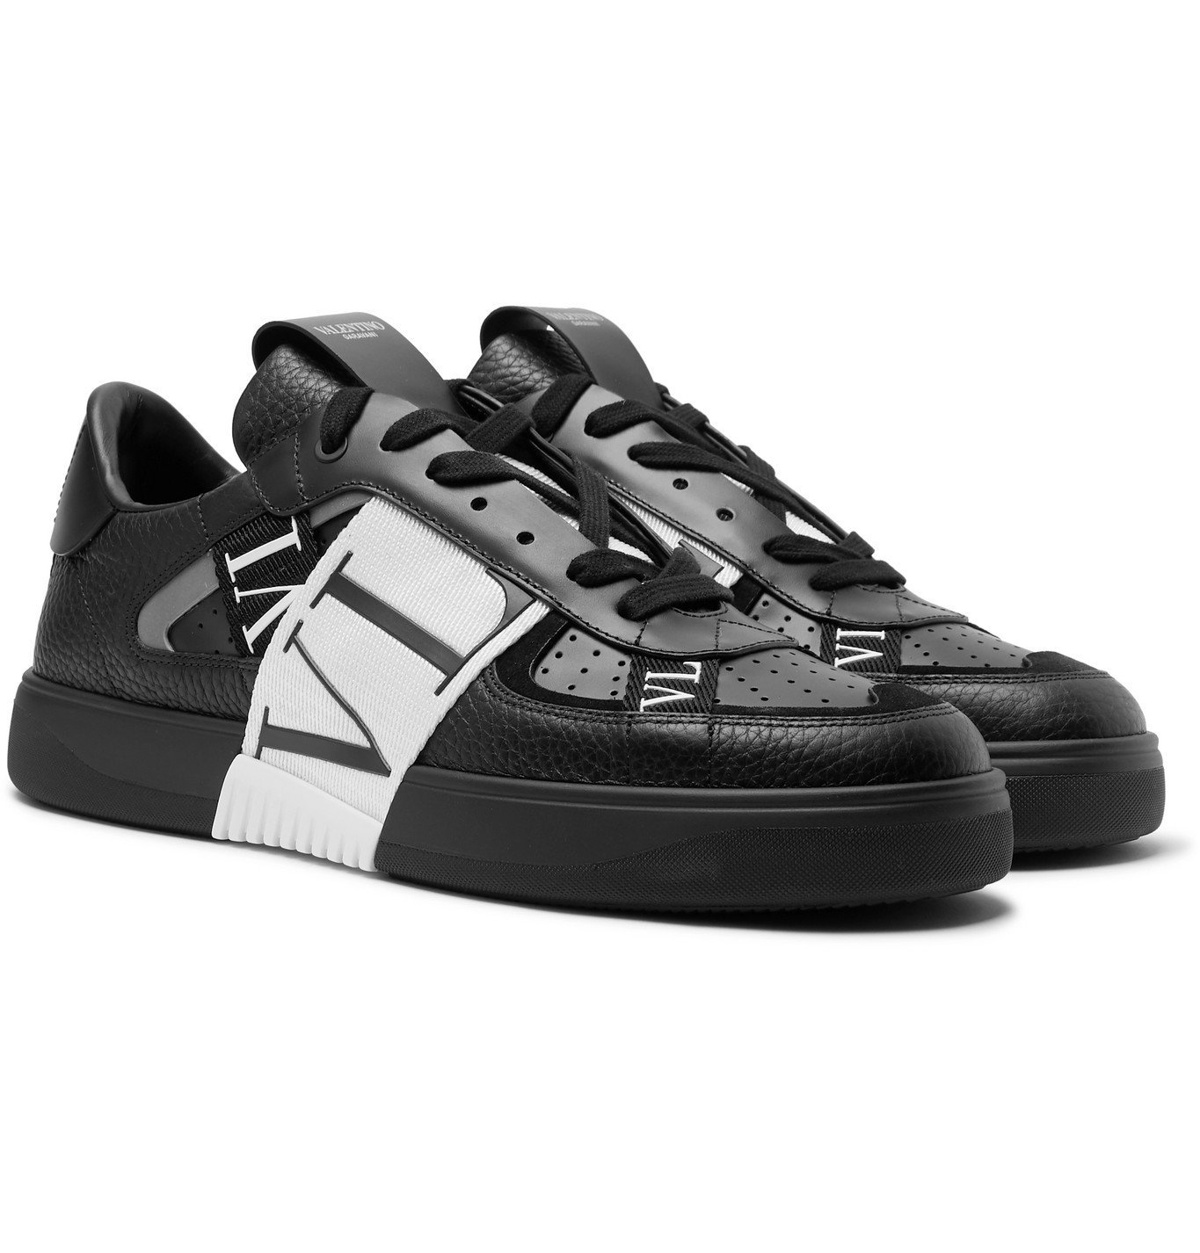 VL7N leather sneakers